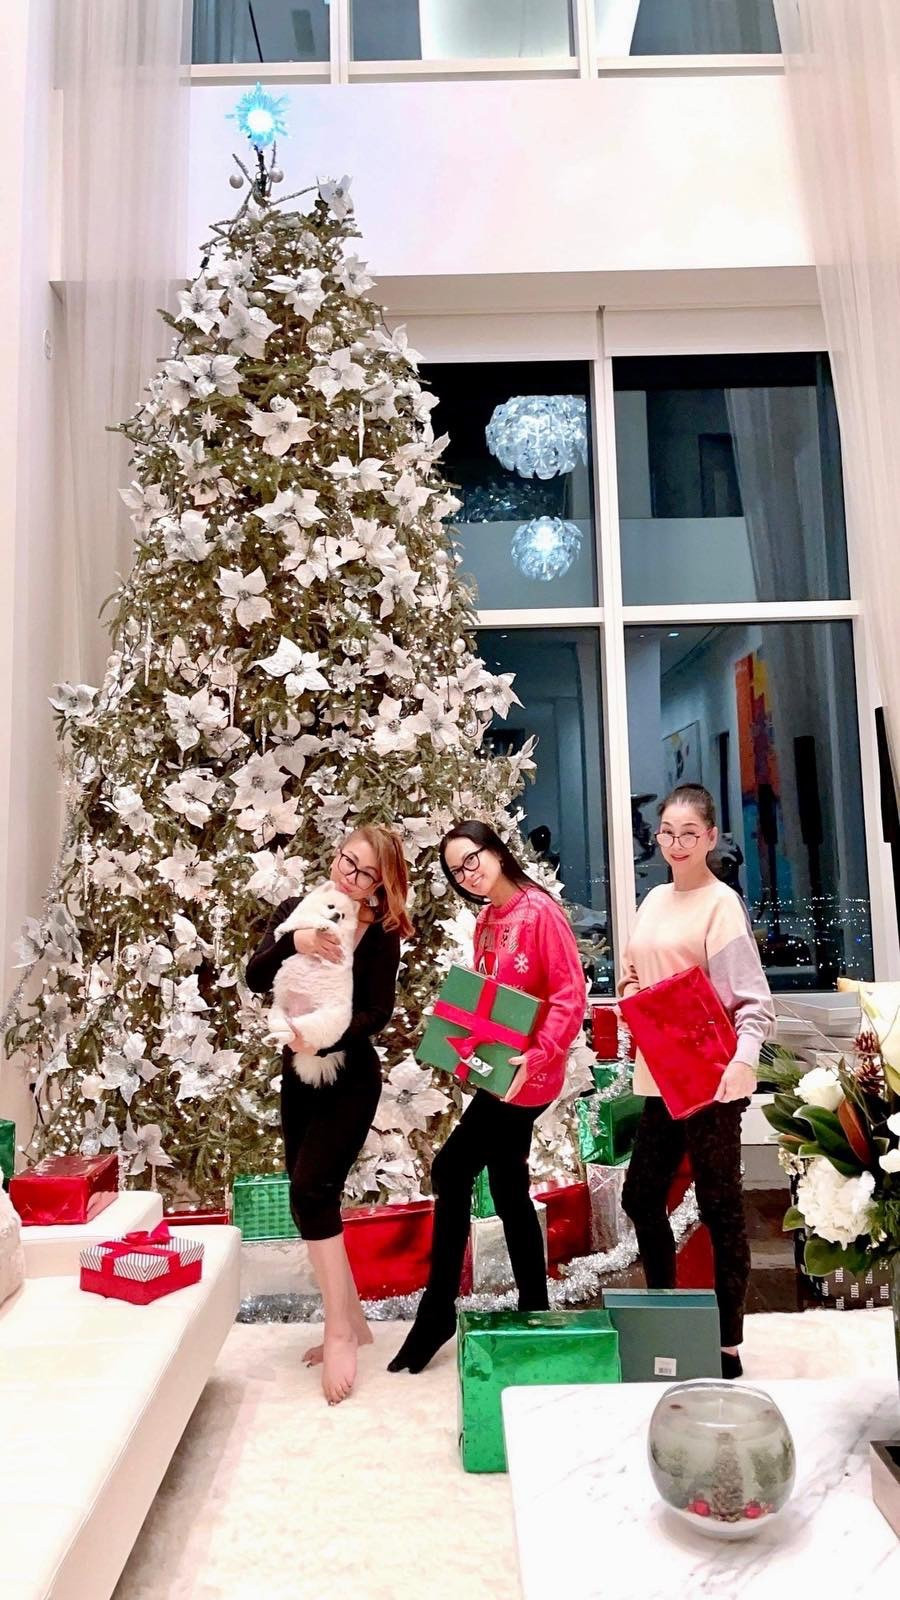 Minh Tuyết đón Noel cùng chị gái tỷ phú Hà Phương ở Mỹ